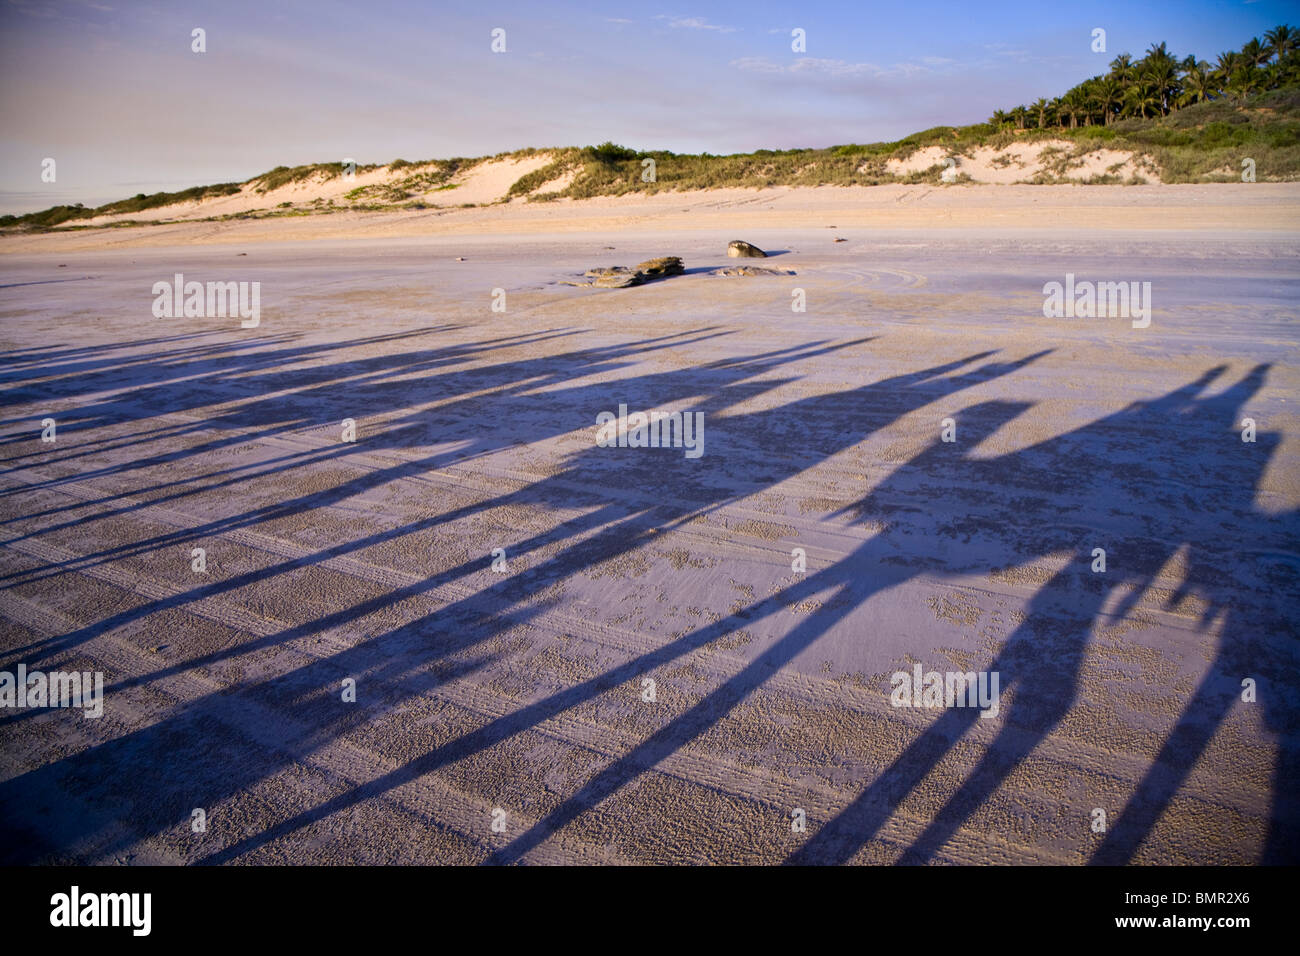 Un tour de chameau sur la plage Cable soit au lever ou au coucher du soleil est une tradition d'accueil à Broome Australie Occidentale Banque D'Images